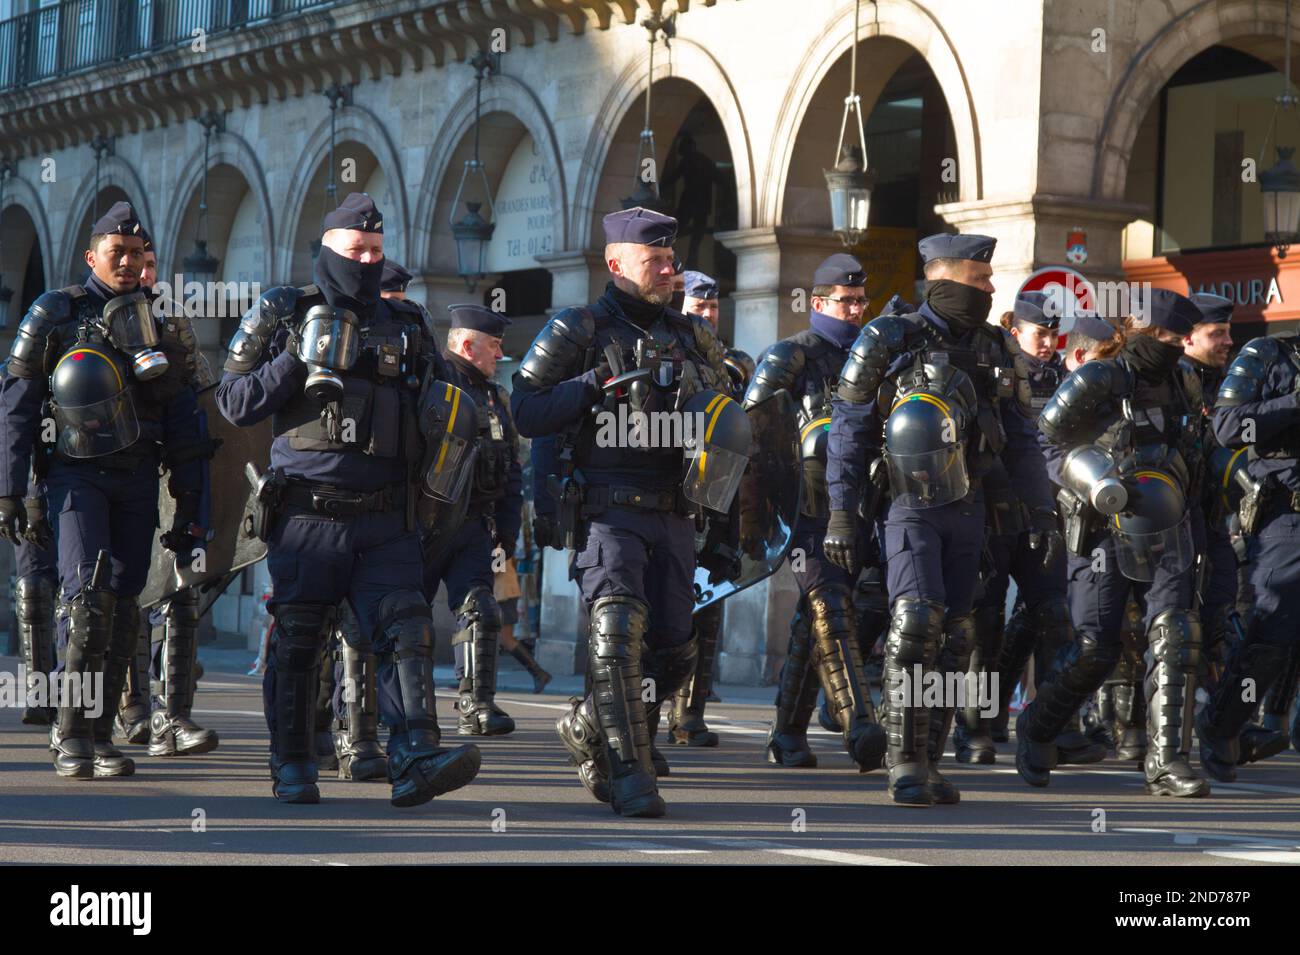 Gruppe der französischen CRS-Nationalpolizei marschiert mit Schutzausrüstung mit Helmen während der Bürgerstreiks und Proteste gegen die Heraufsetzung des Rentenalters Paris Stockfoto